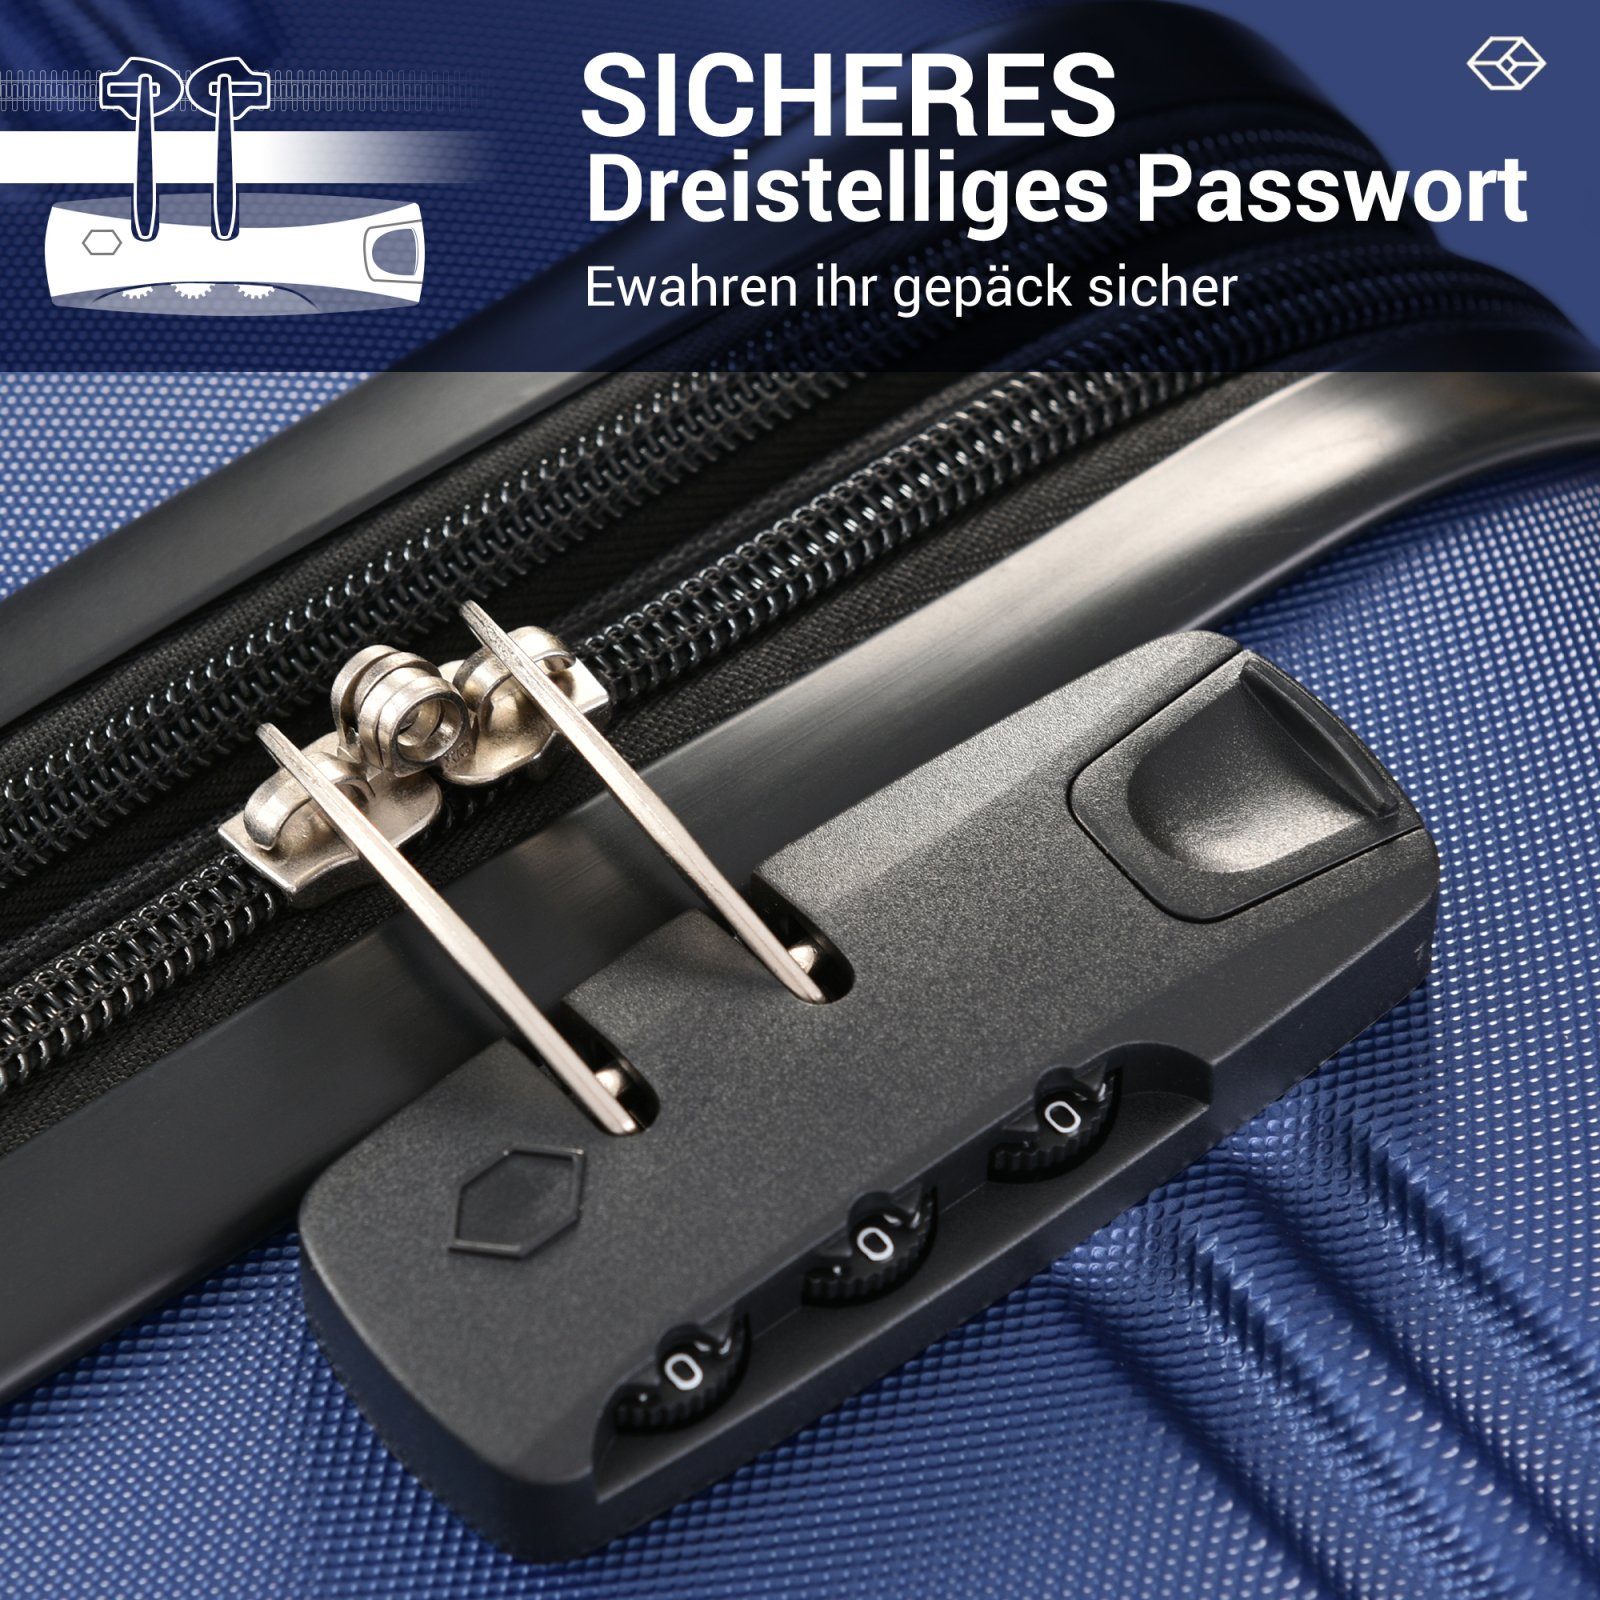 ZollschlossABS-Material Kofferset dunkelblau TSA SEEZSSA (3 tlg)Koffer Trolleymit